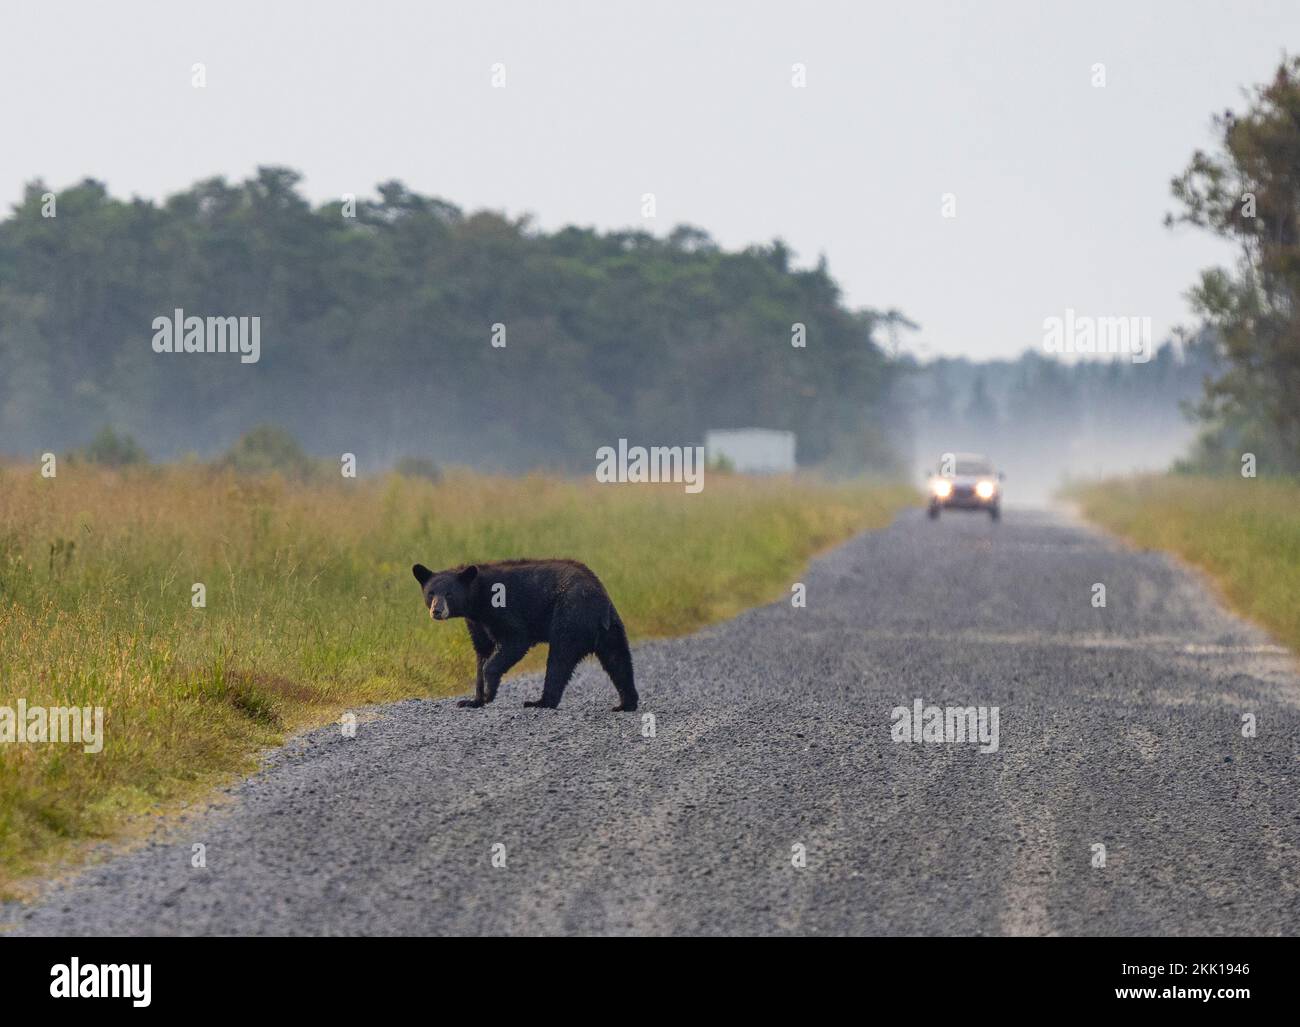 American Black Bear (Ursus americanus) attraversando la strada con l'auto in background Foto Stock